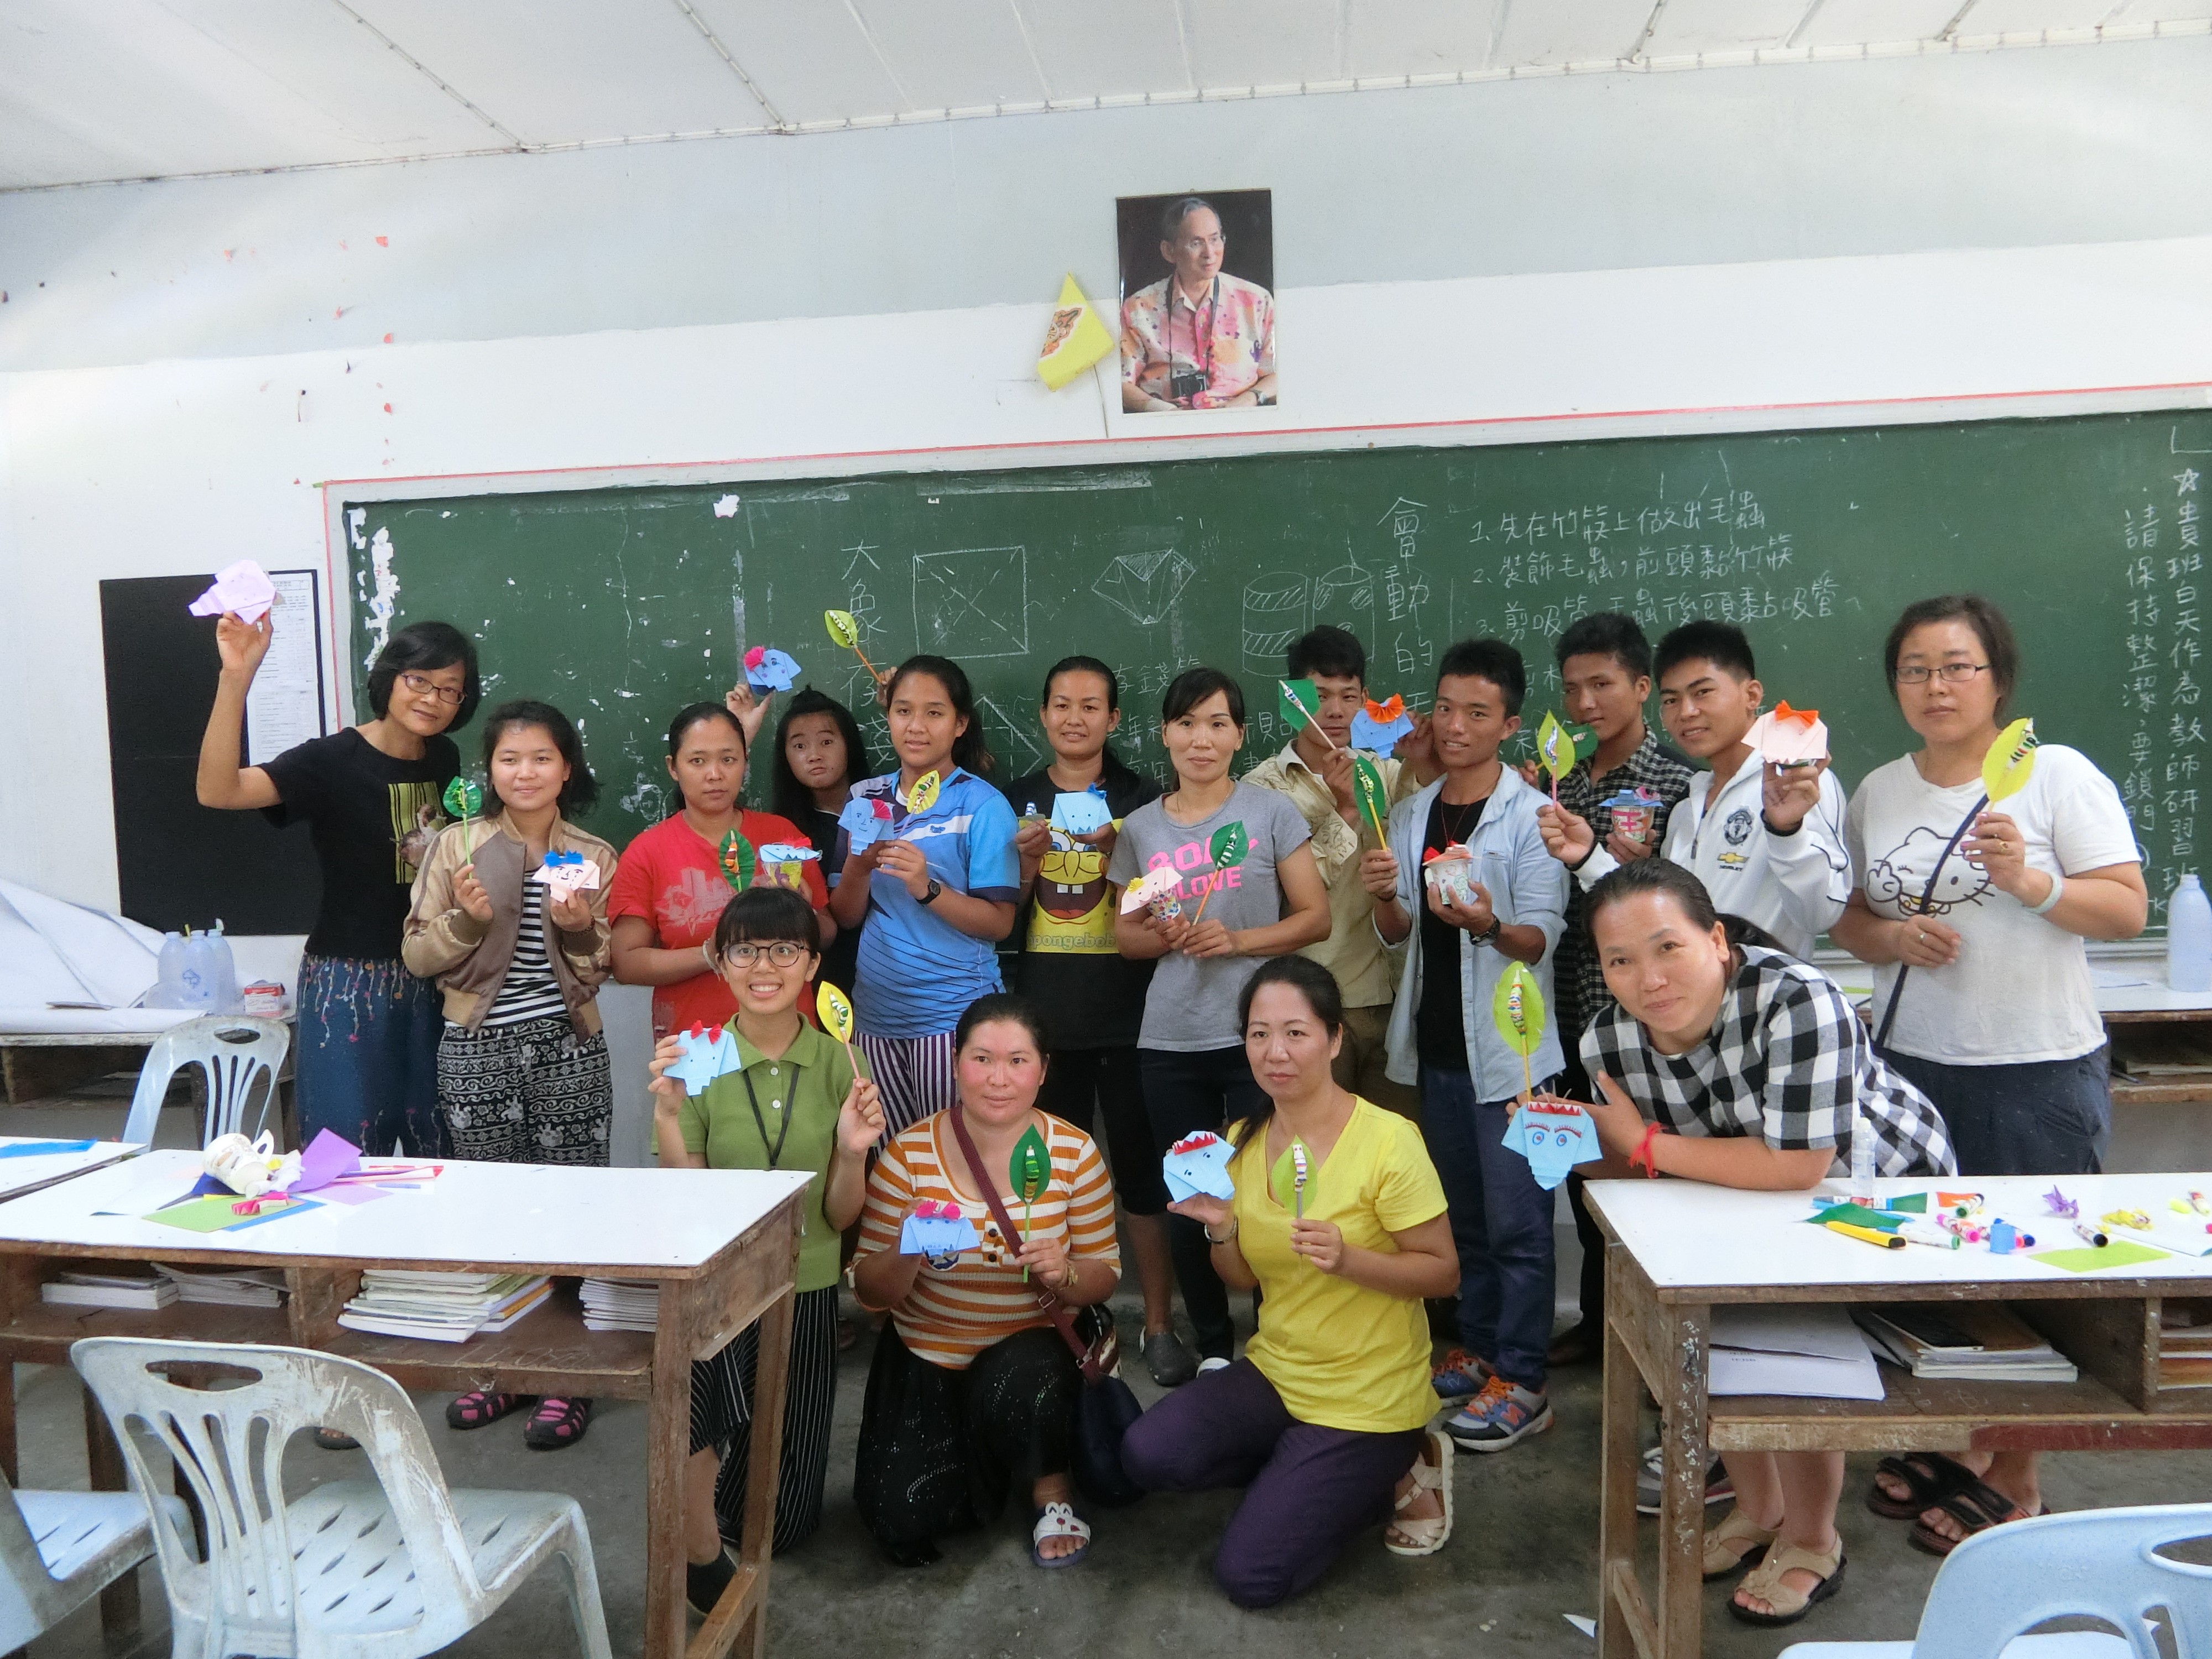 現在是師資培育時間，團員廖芷盈正在進行美勞科目的教學，當地老師非常用心學習。